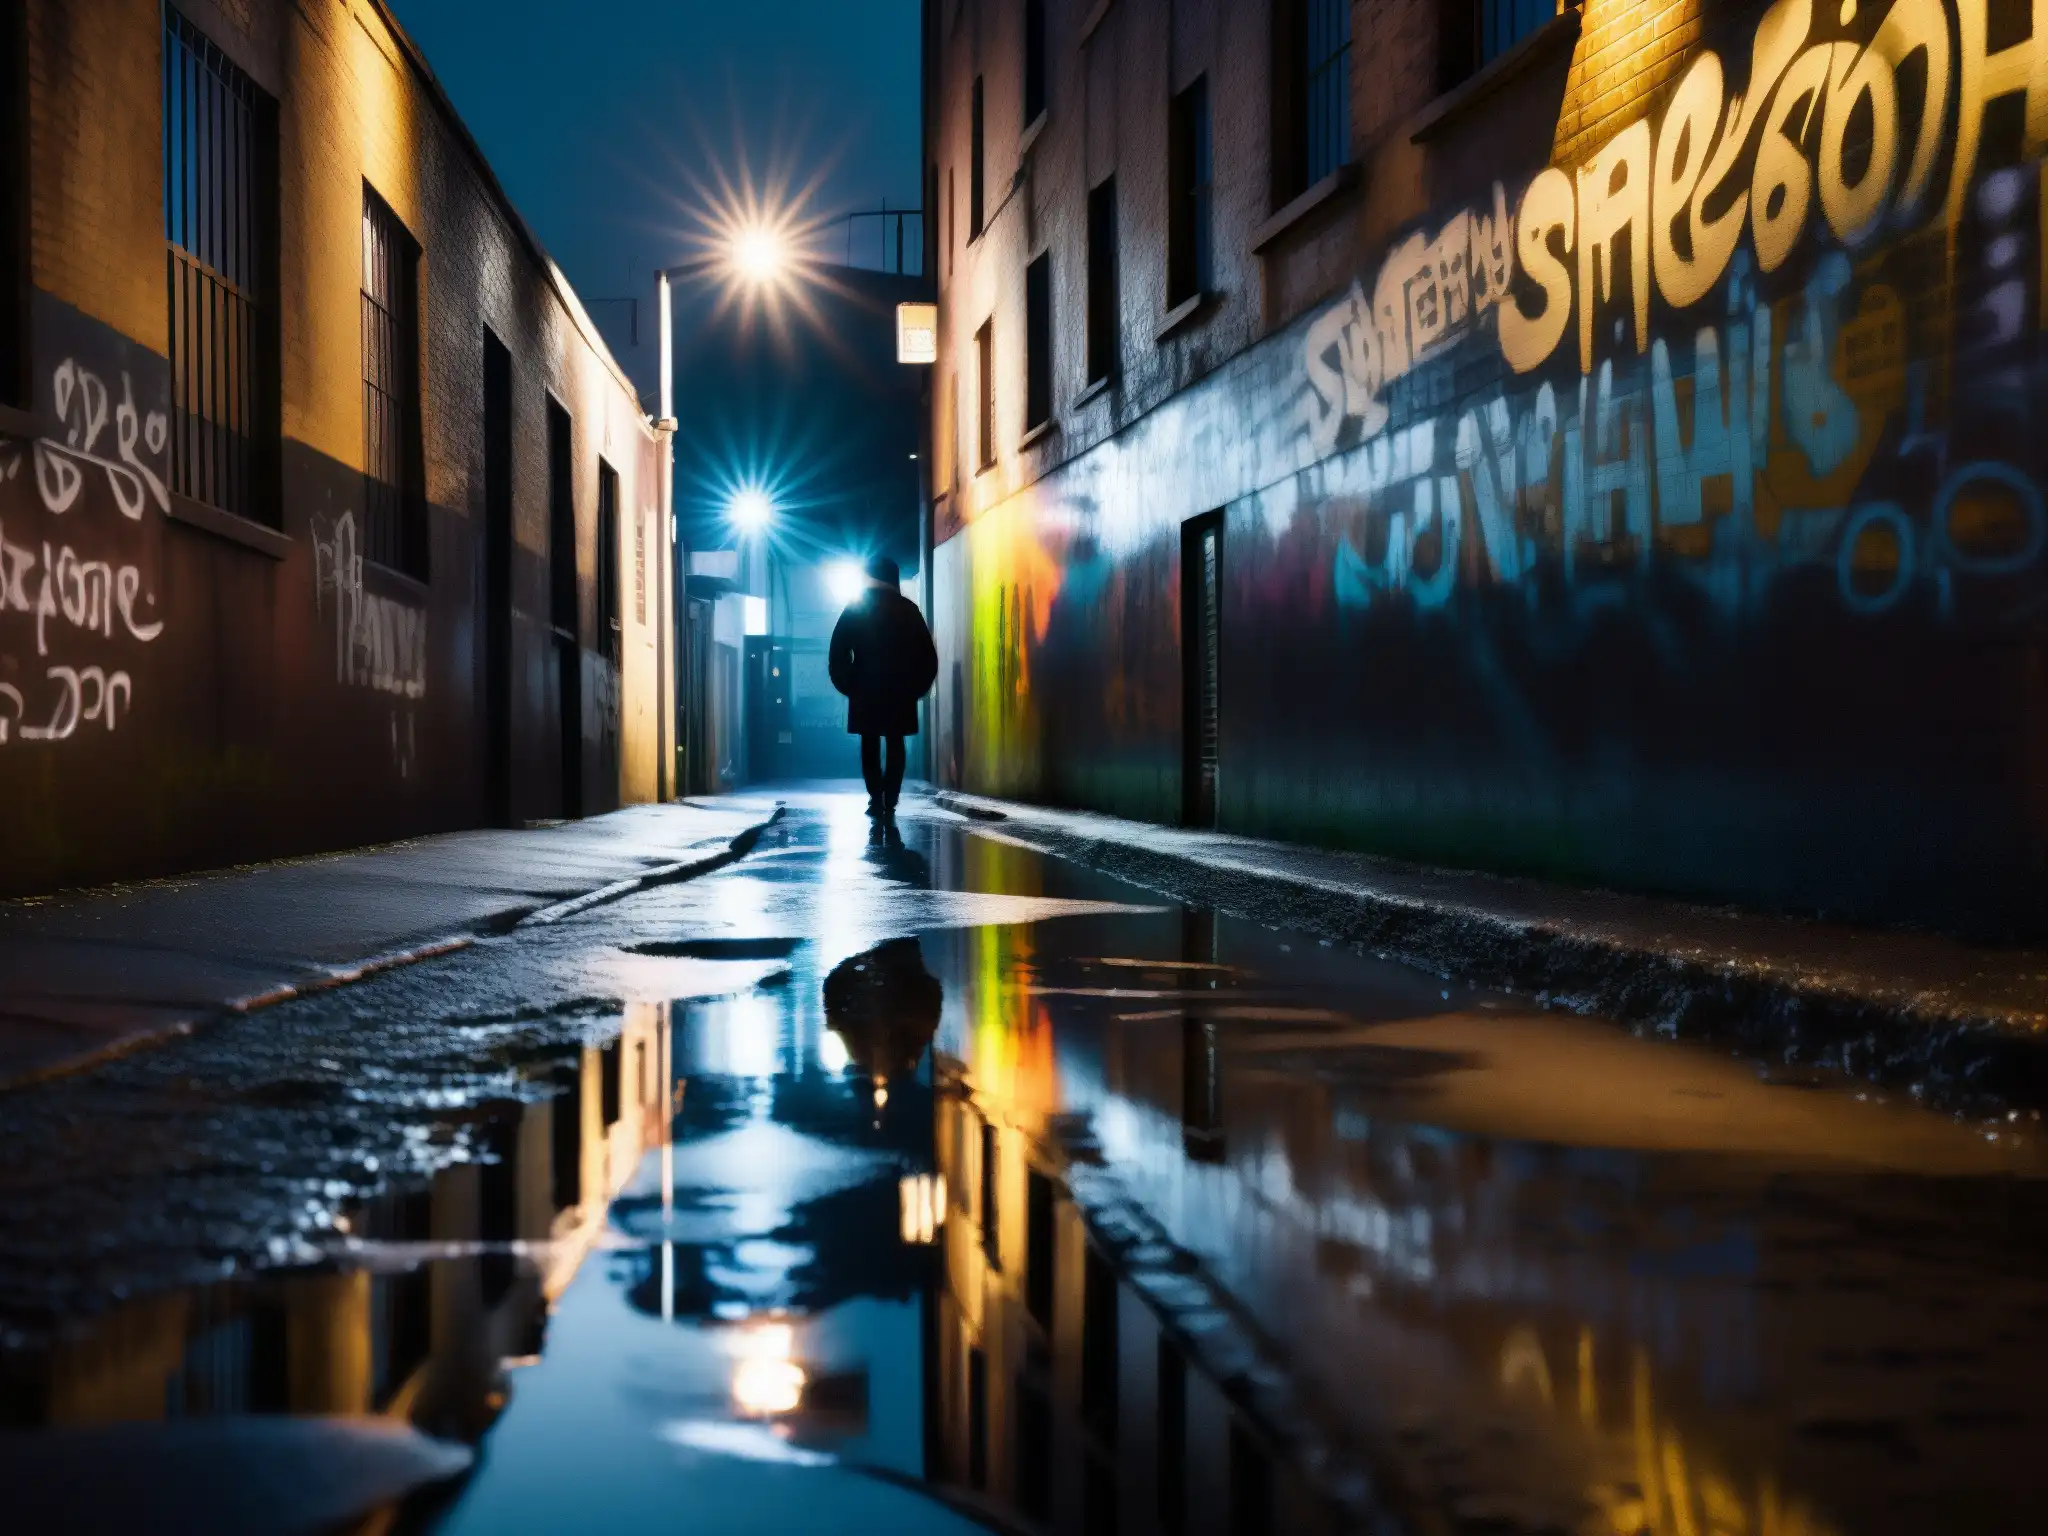 Un callejón urbano con grafitis, charcos y luces lejanas, evocando el impacto psicológico de leyendas urbanas